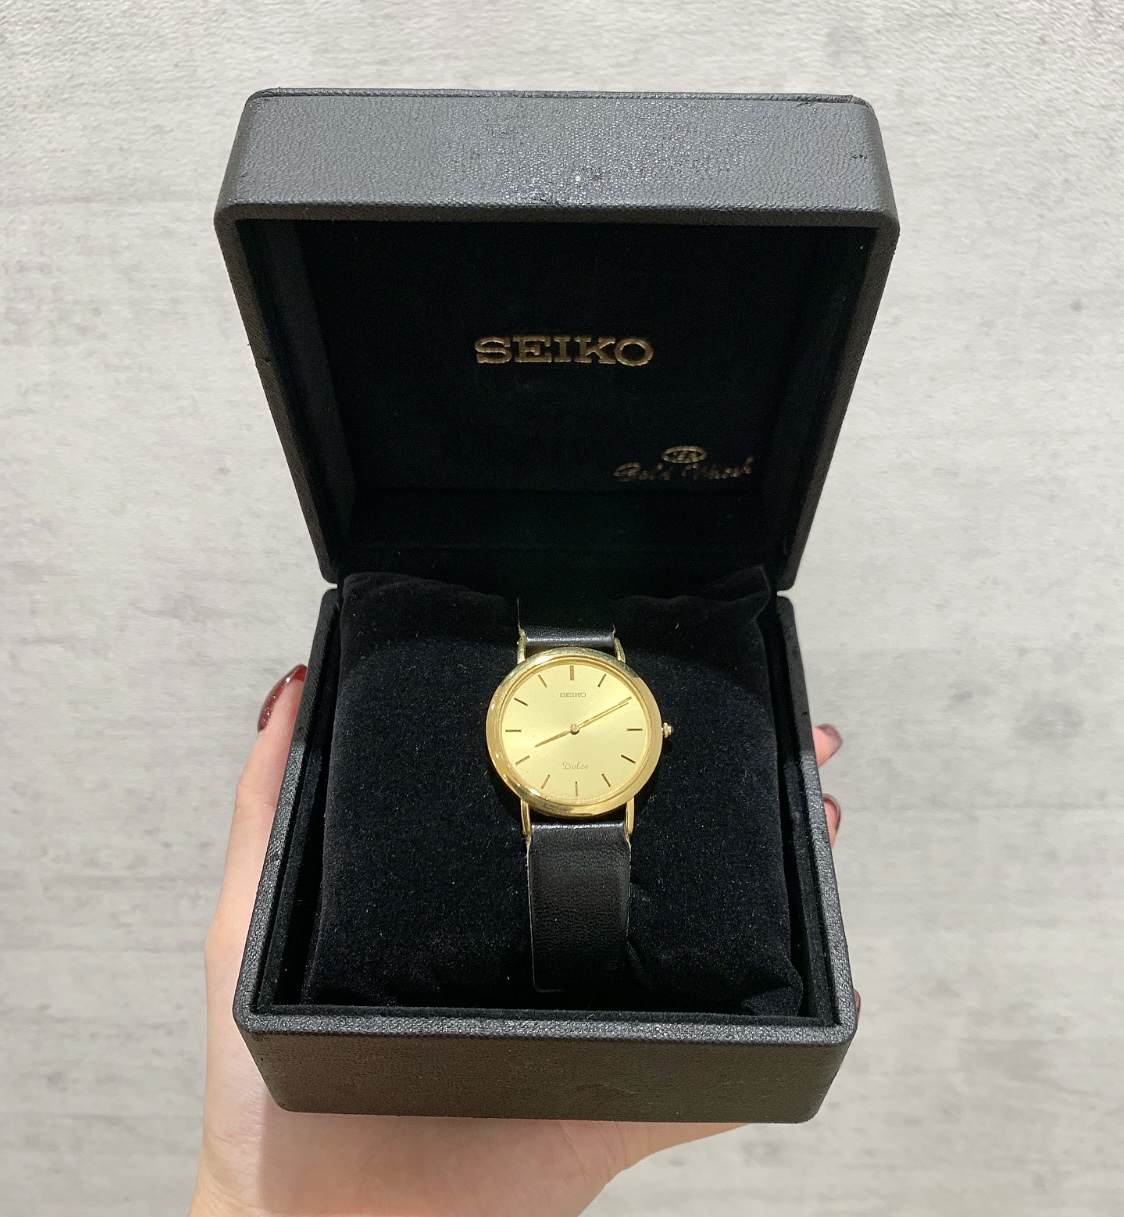 【買取】セイコー SEIKO ドルチェ 18kt 腕時計 時計 ゴールド ブラック 革 SEIKO DOLCE - 売るナビ志木店